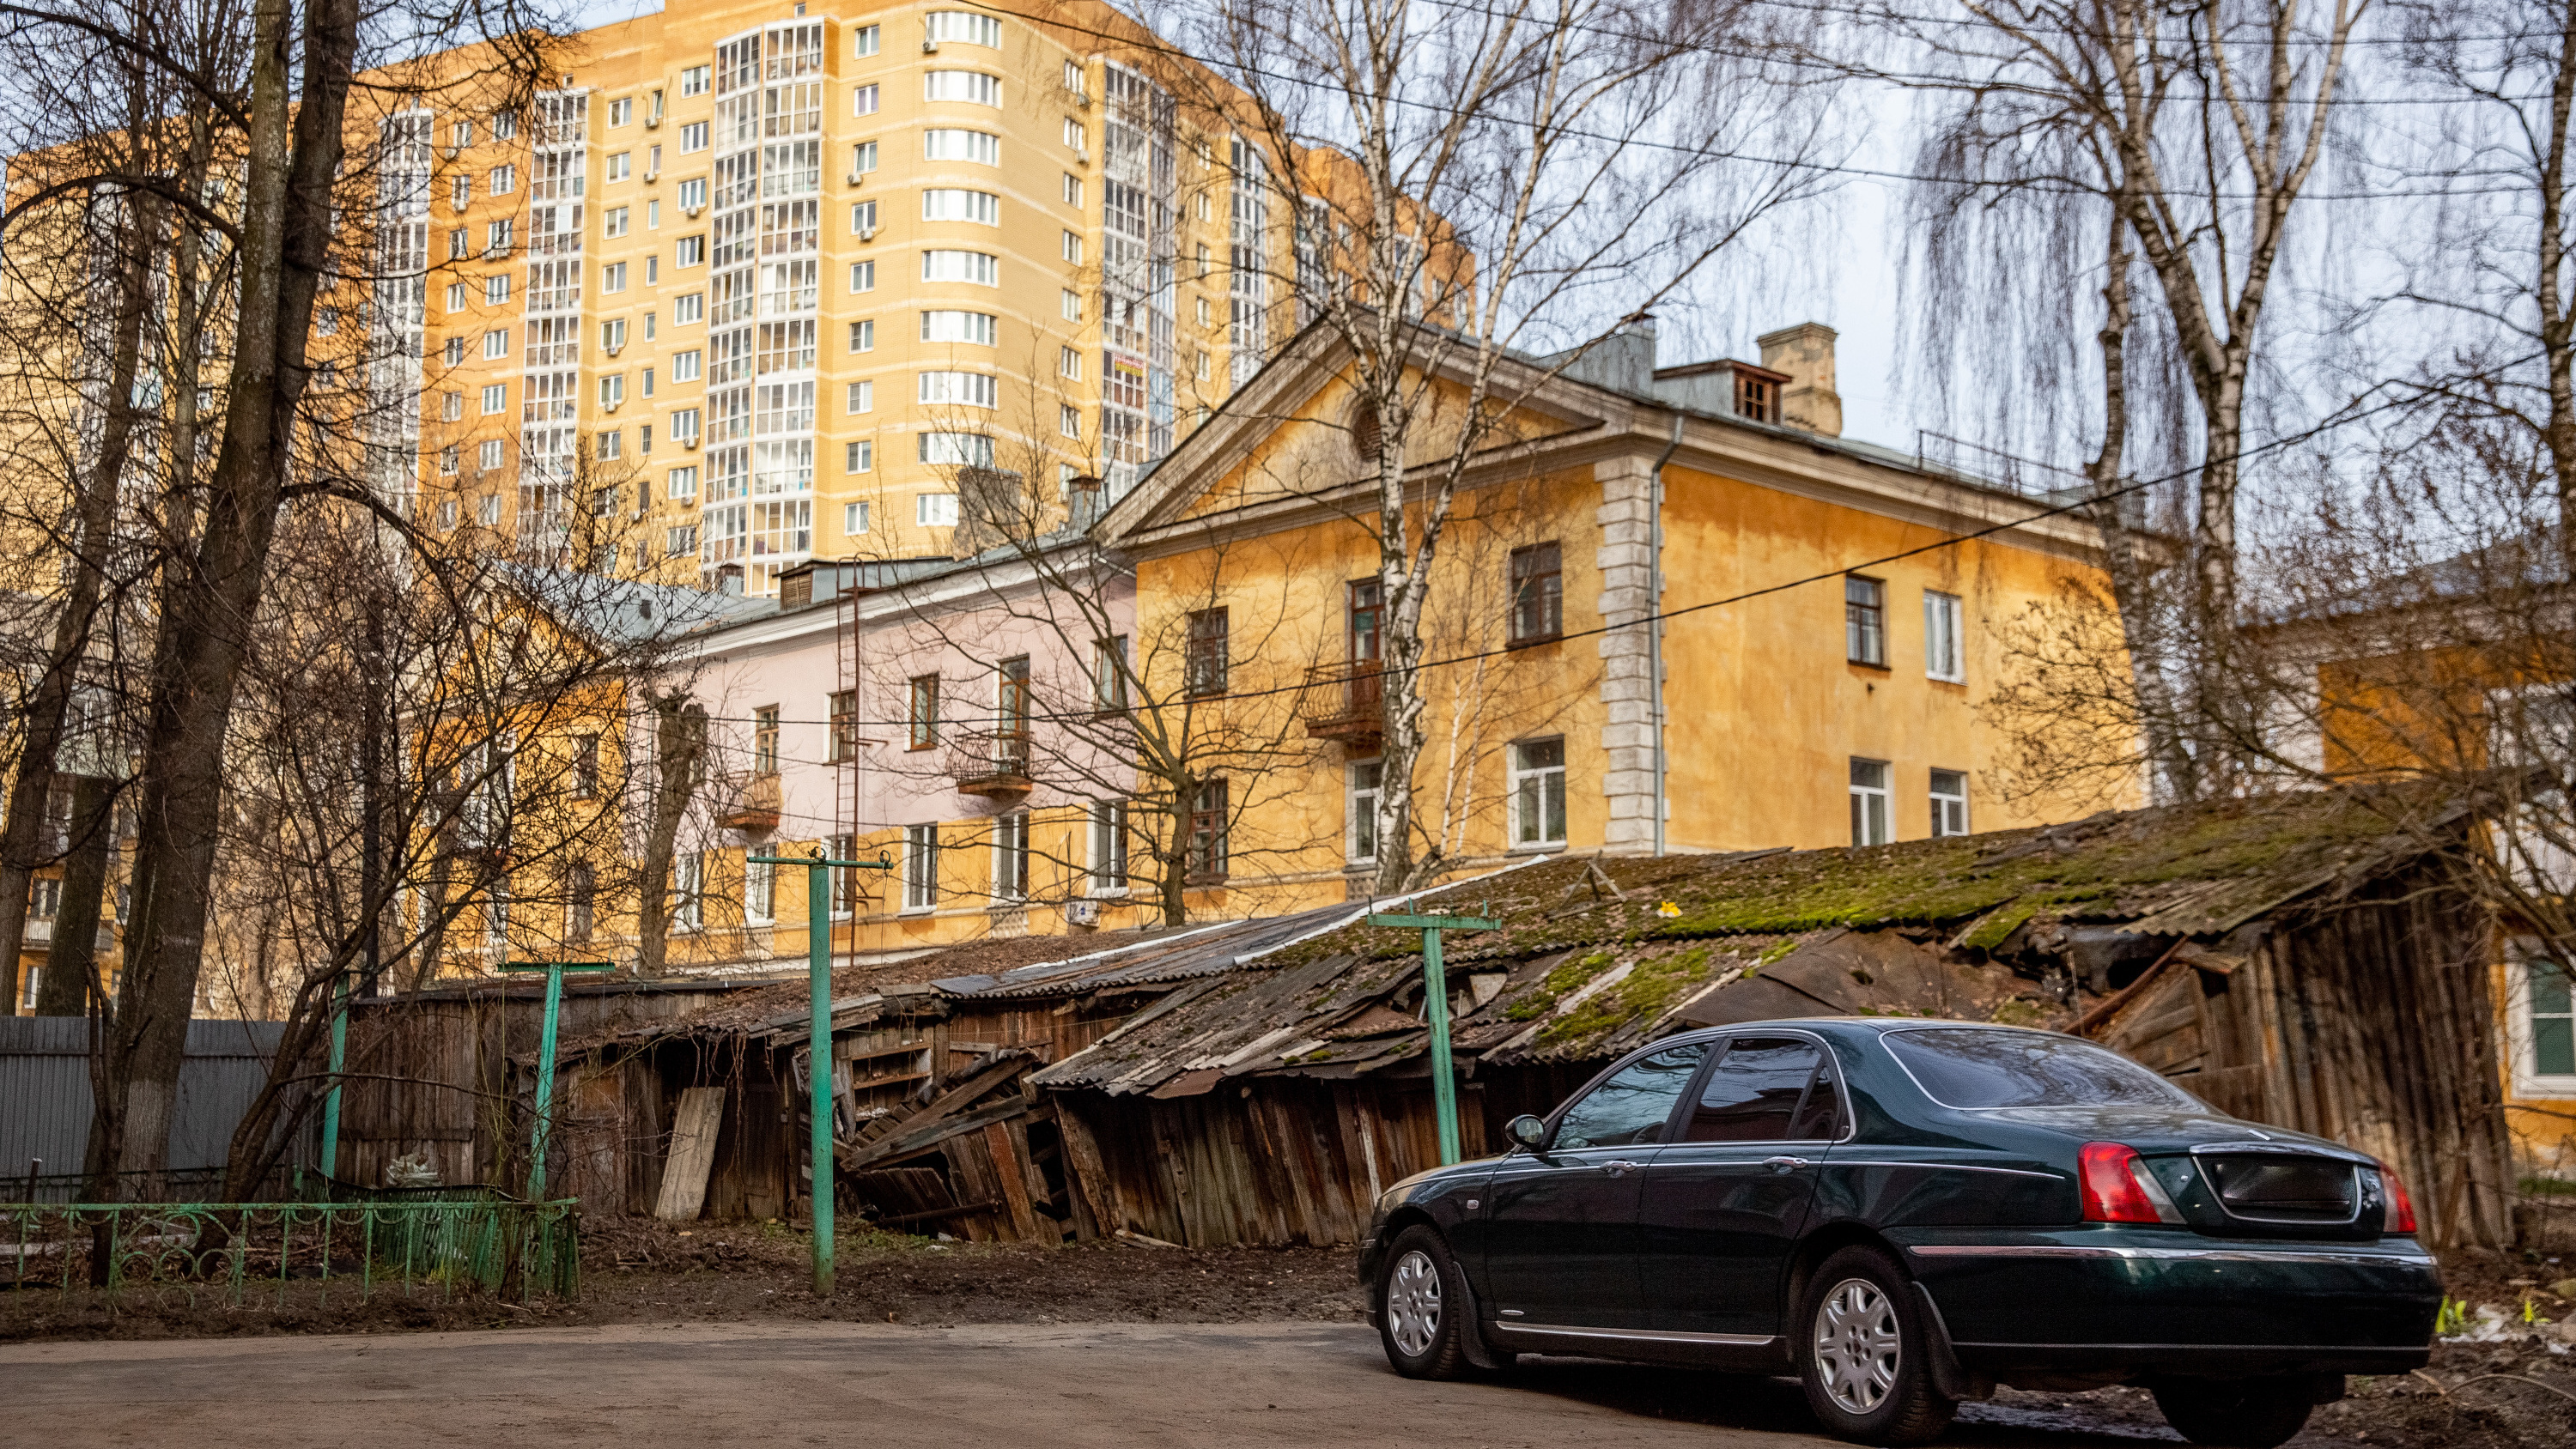 Сараи, новостройки и «орущие» столбы: гуляем по району Ярославля, где от домов отваливаются фасады